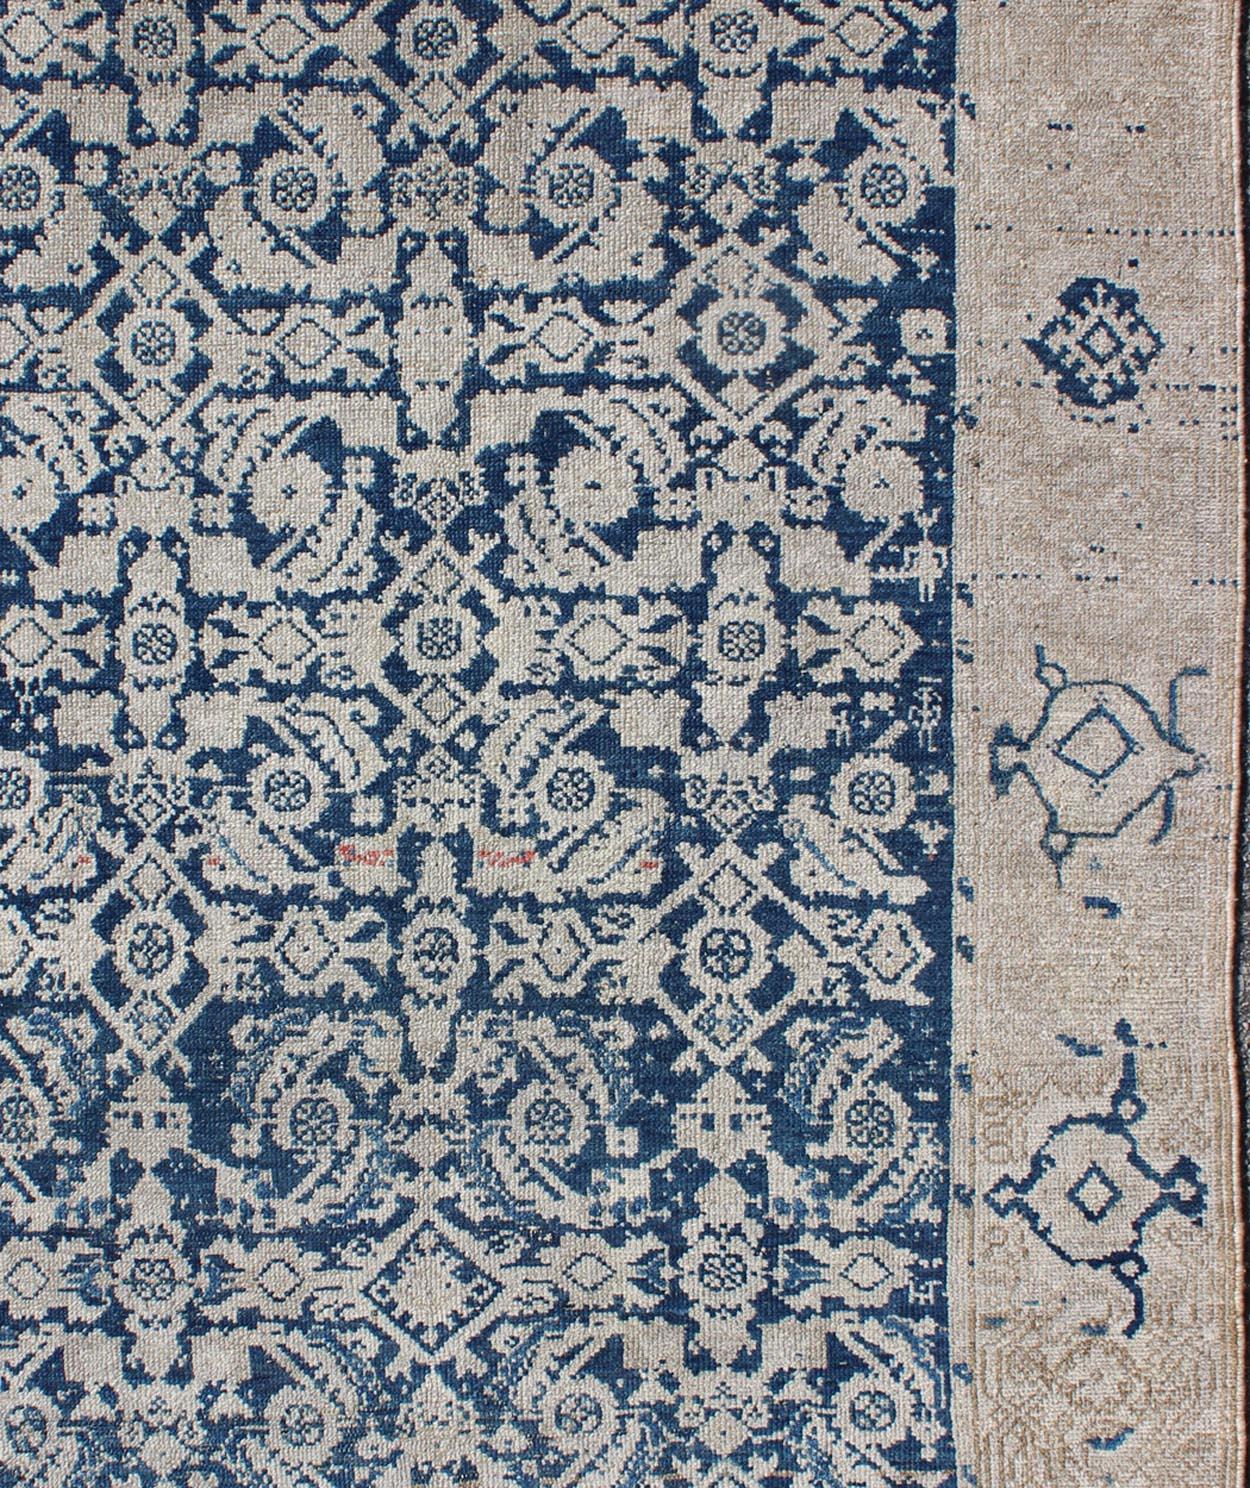 Tapis persan ancien Malayer à motifs géométriques Herati de couleur bleu marine et aux tons terreux. Tapis persan ancien dans les tons marins avec des motifs géométriques, tapis EN-165849, pays d'origine / type : Iran / Malayer, vers 1920.

Ce